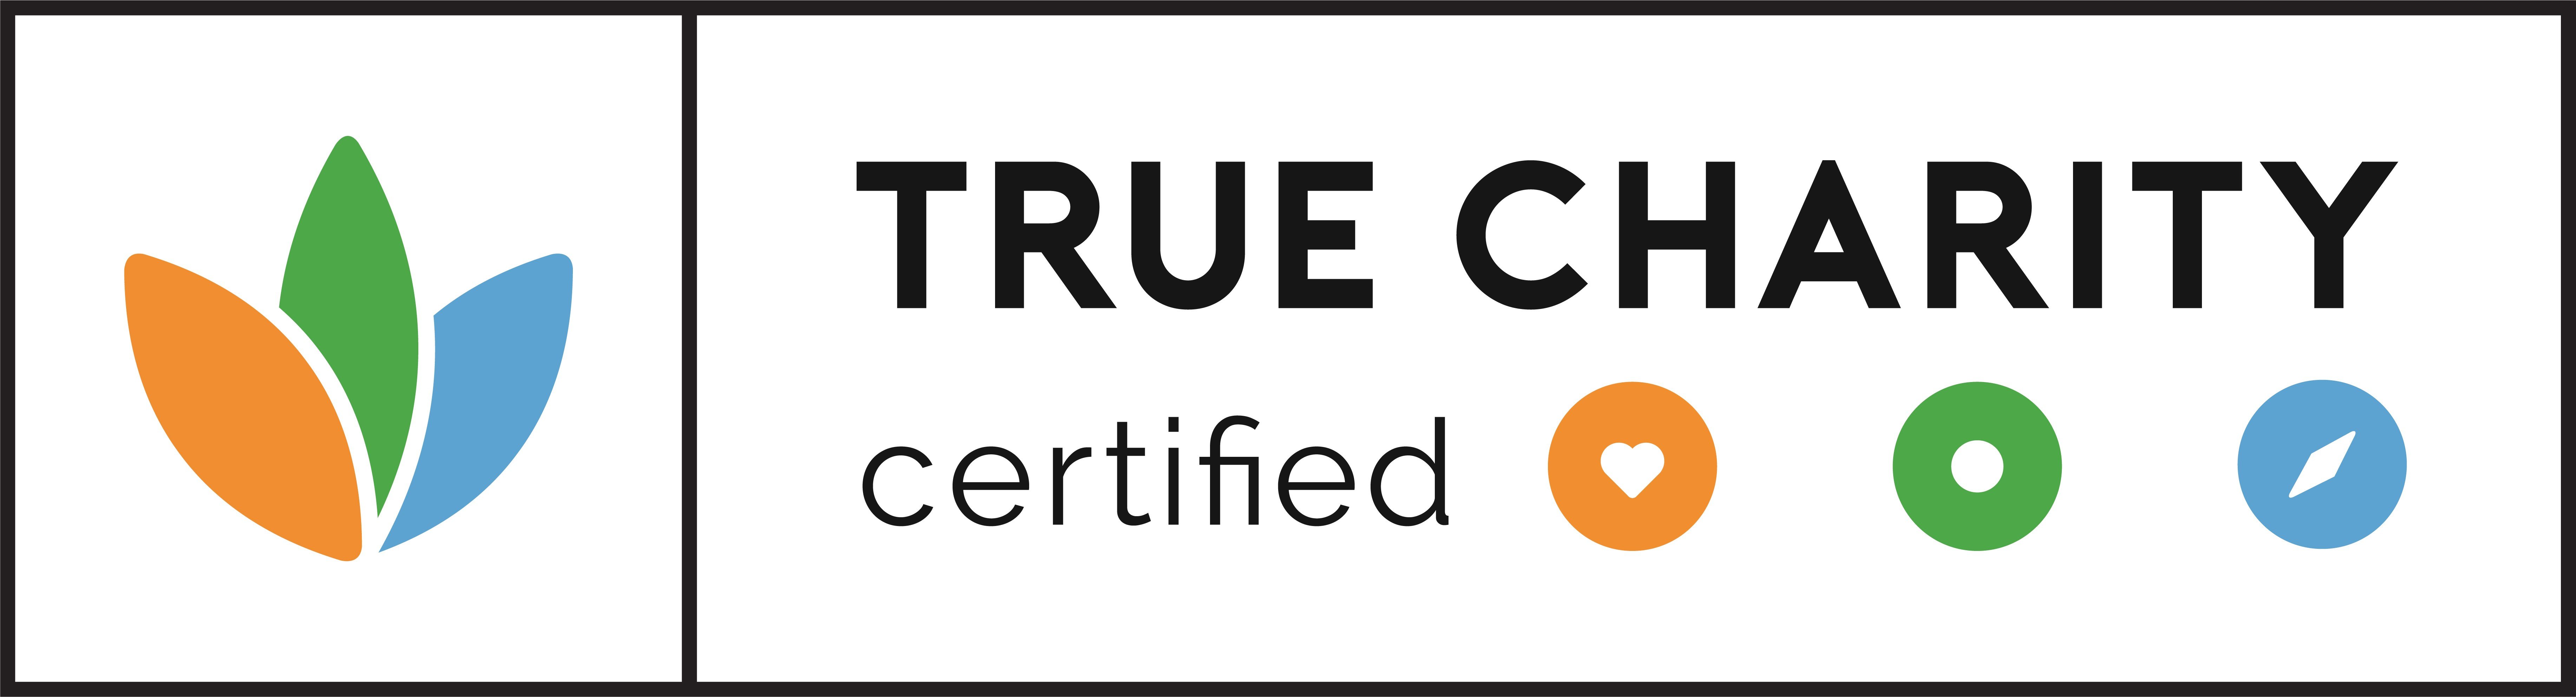 True Charity Certified